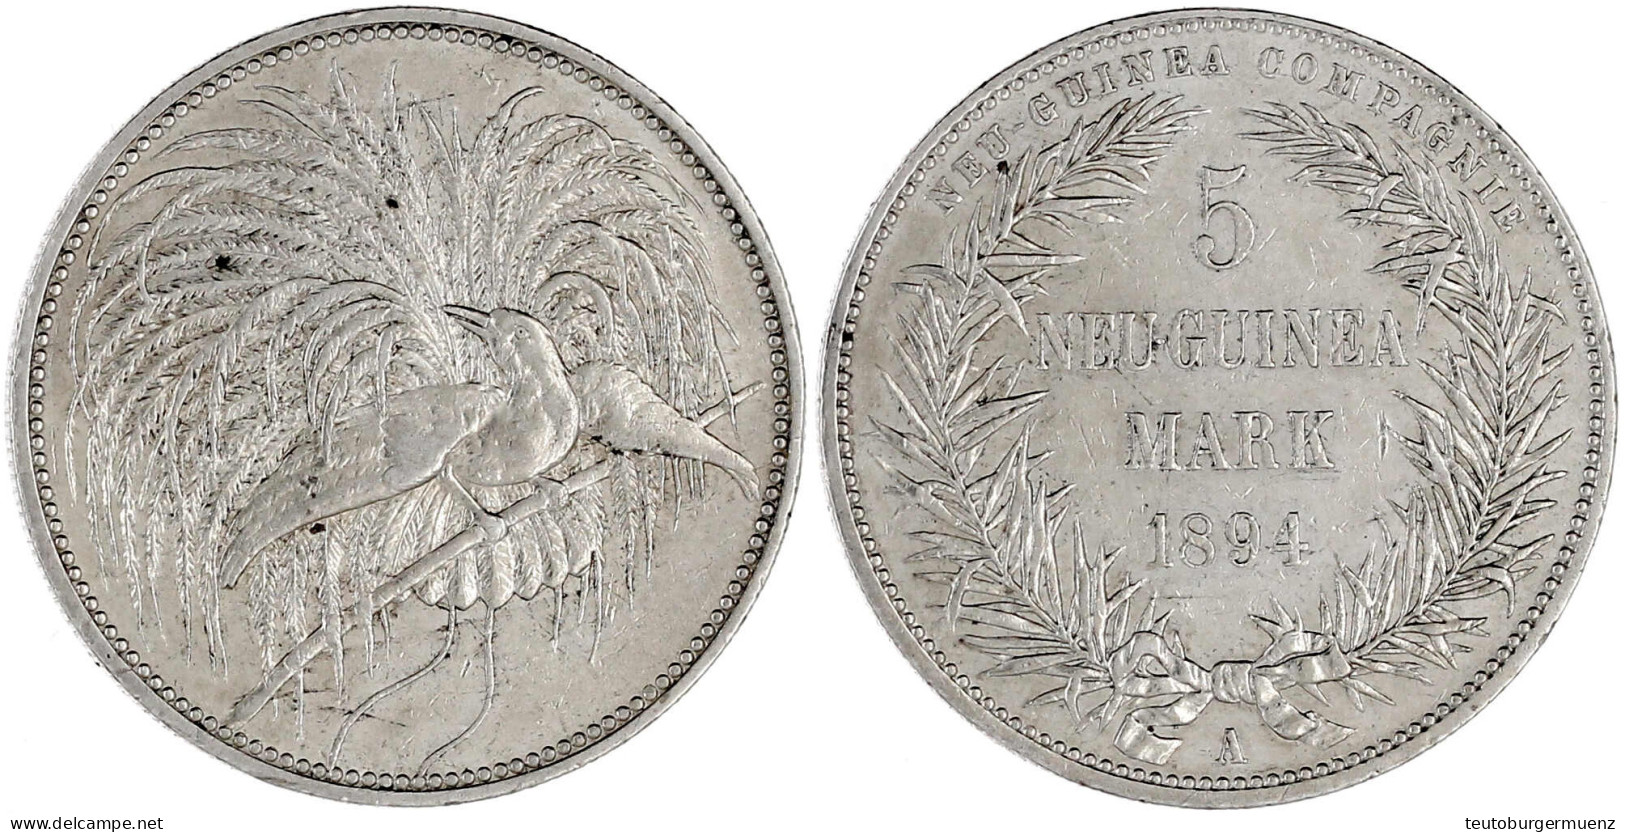 5 Neuguinea-Mark 1894 A, Paradiesvogel. Gutes Sehr Schön, Kl. Kratzer. Jaeger 707. - Duits Nieuw-Guinea